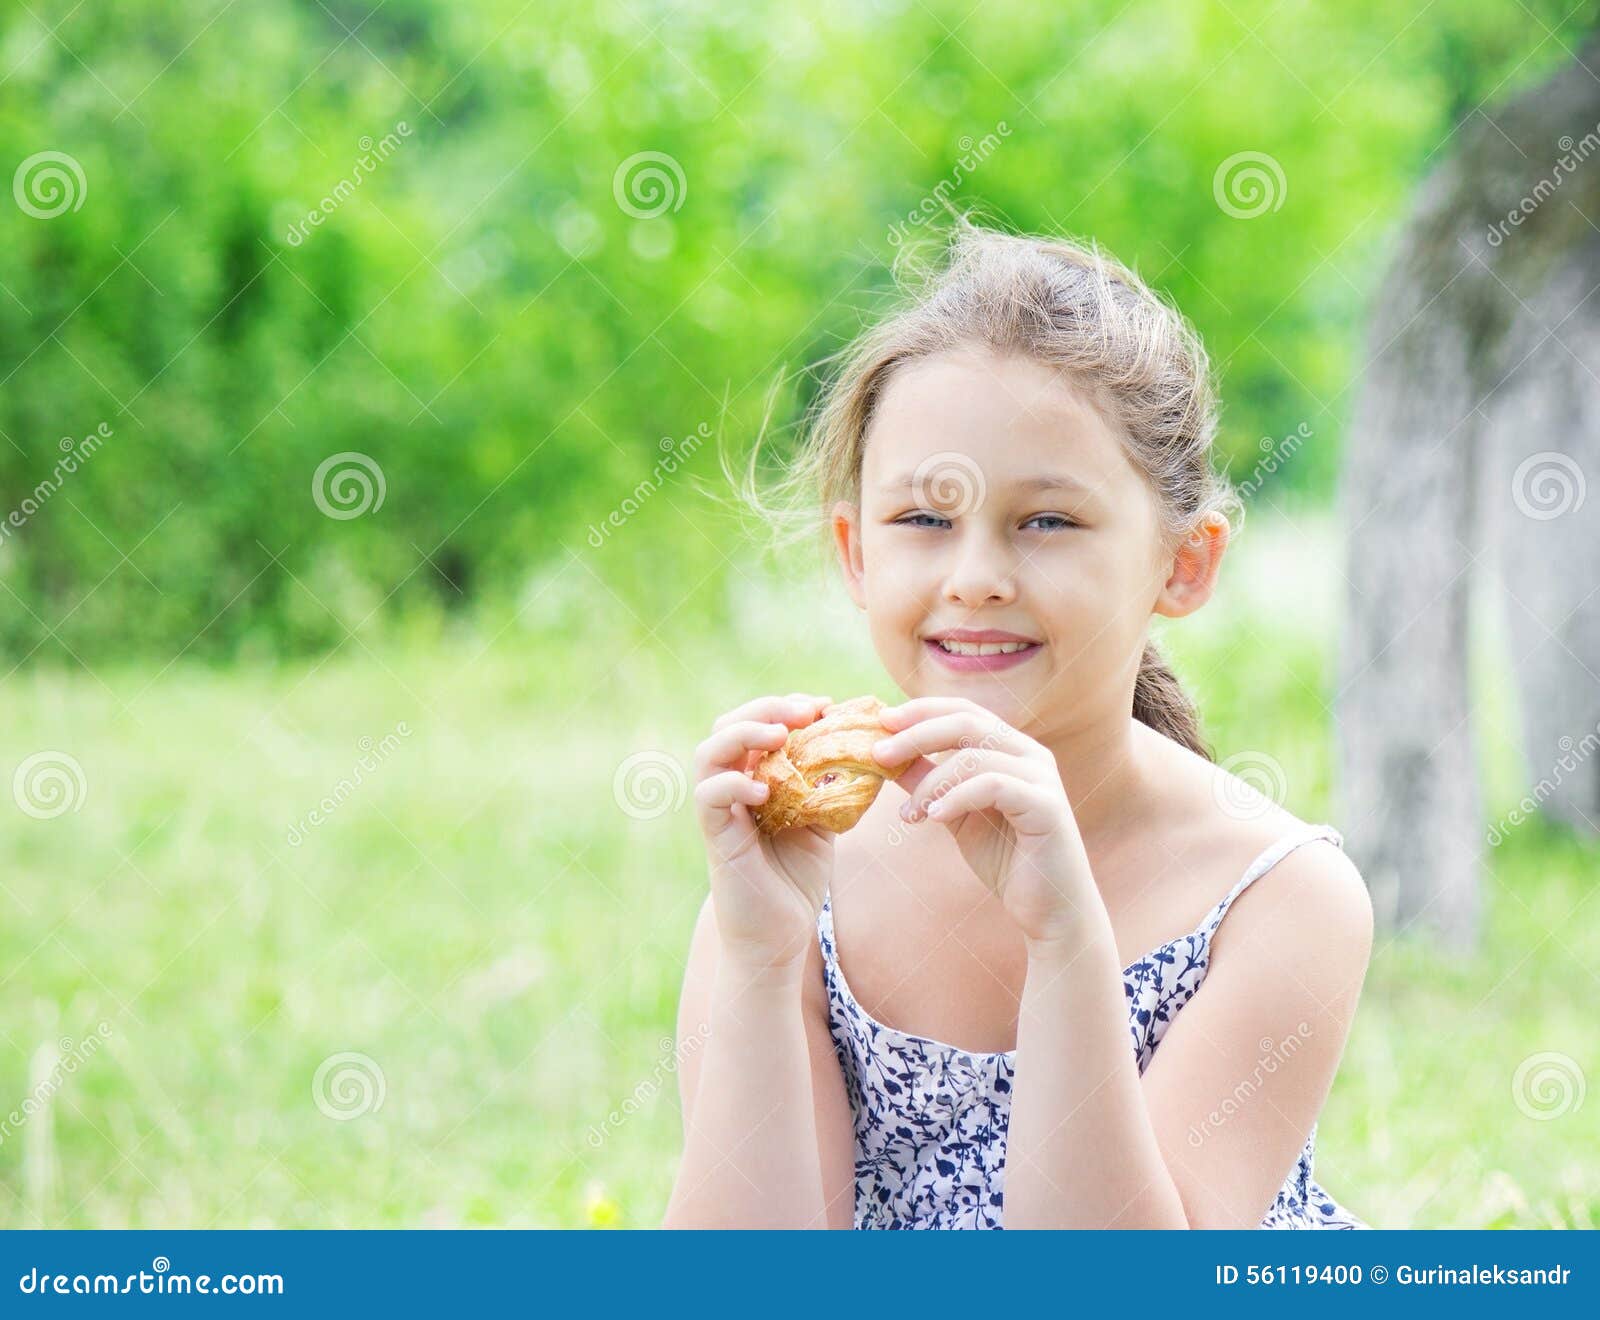 可爱的小女孩喜欢吃甜巧克力面包. 4岁小孩. 文本空格 库存照片 - 图片 包括有 食物, 韩文: 241498452